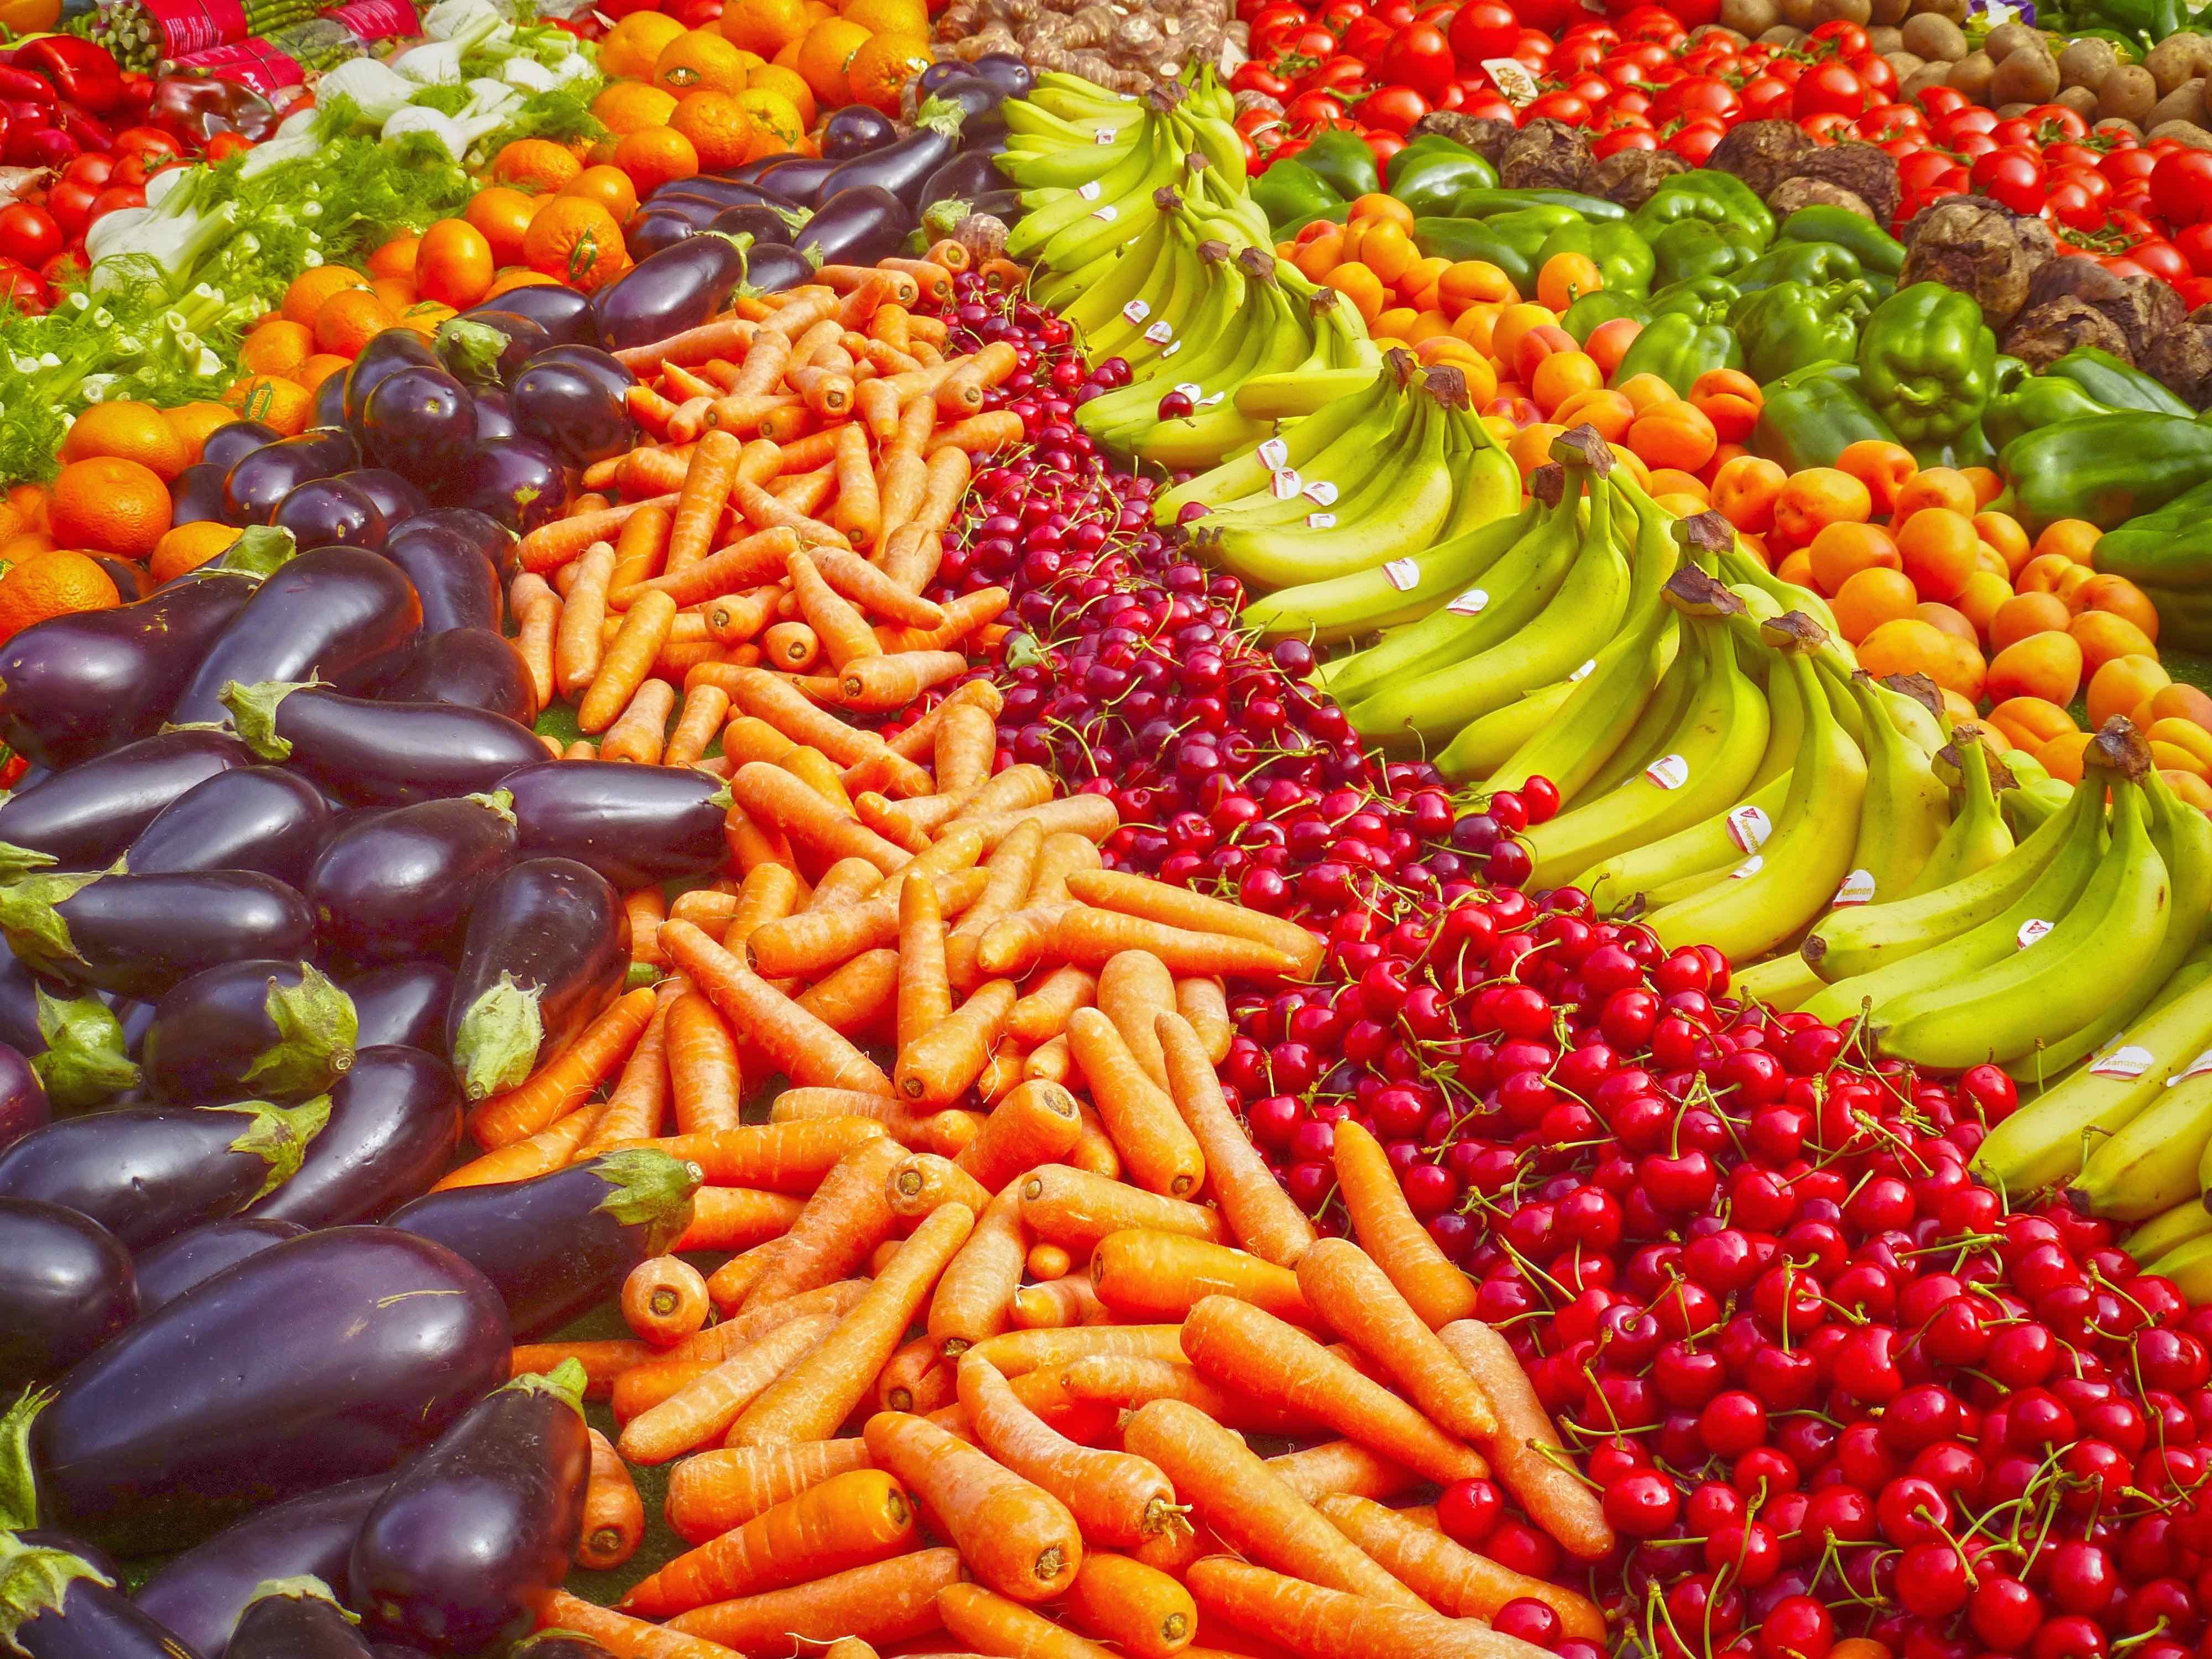 2021 Anno Internazionale della Frutta e della Verdura